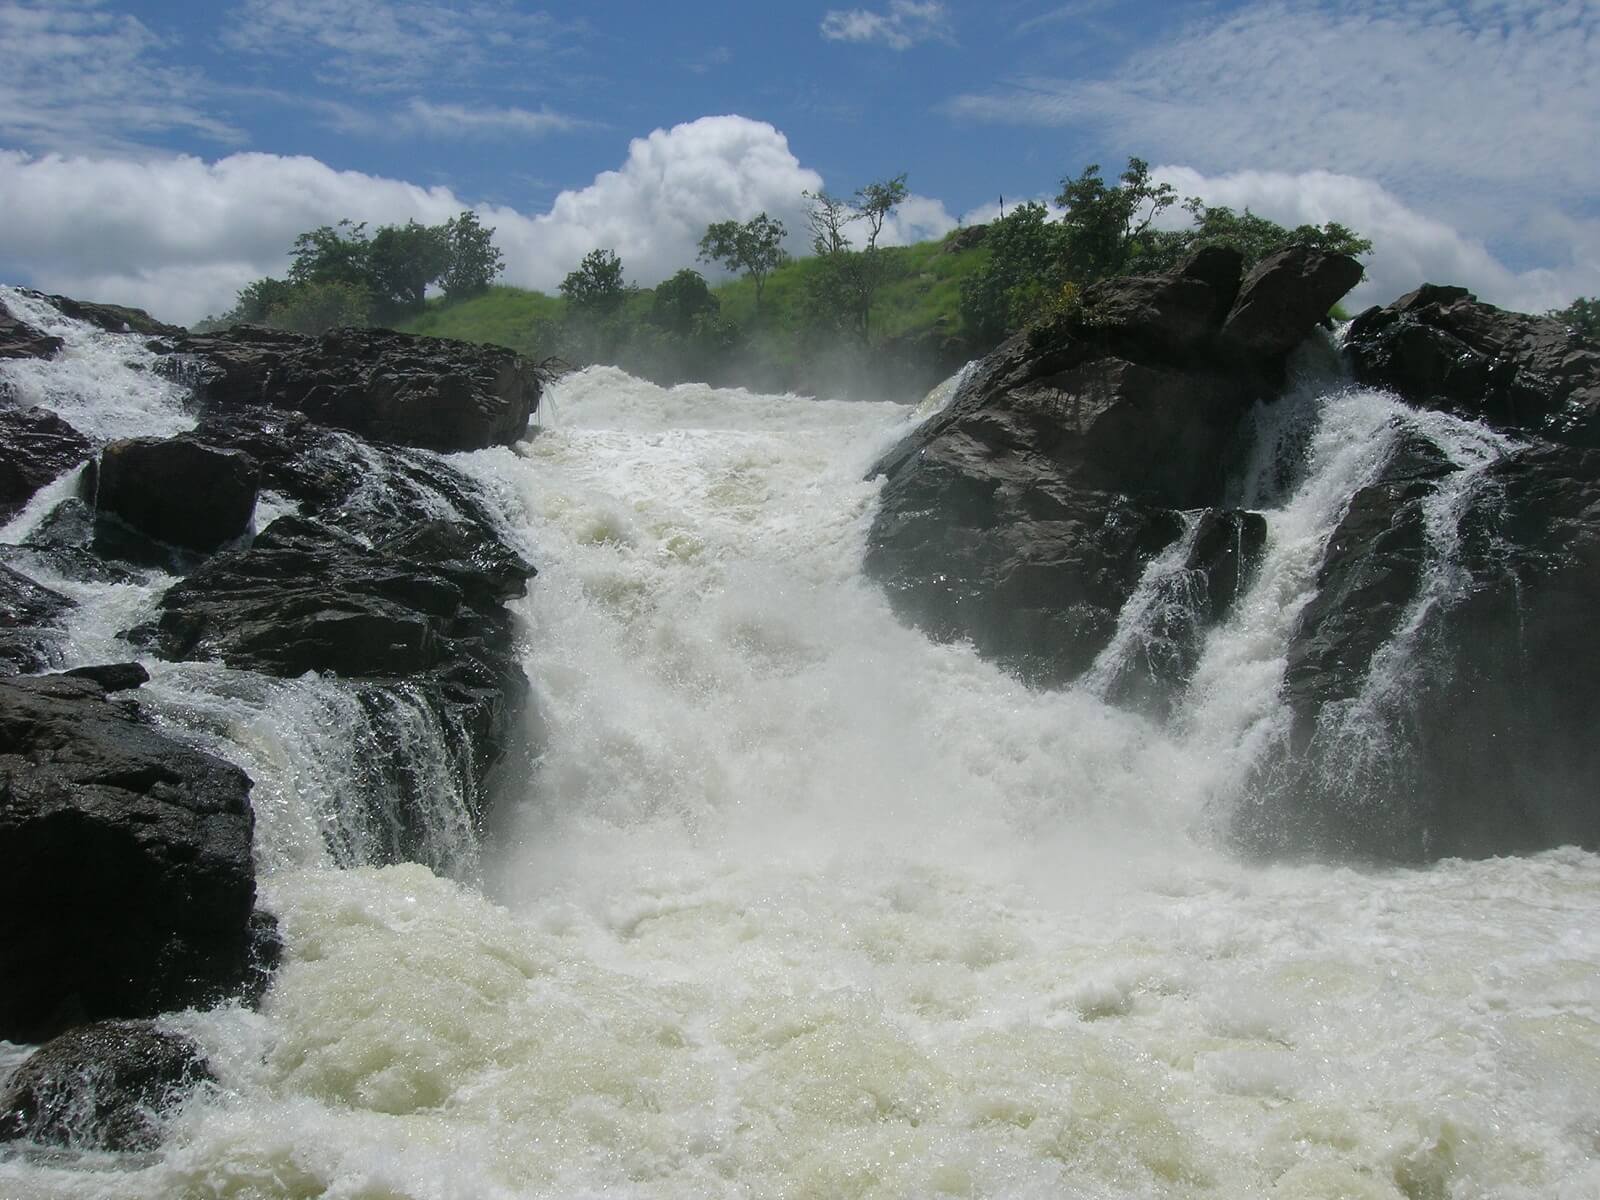 Shivansamudra falls